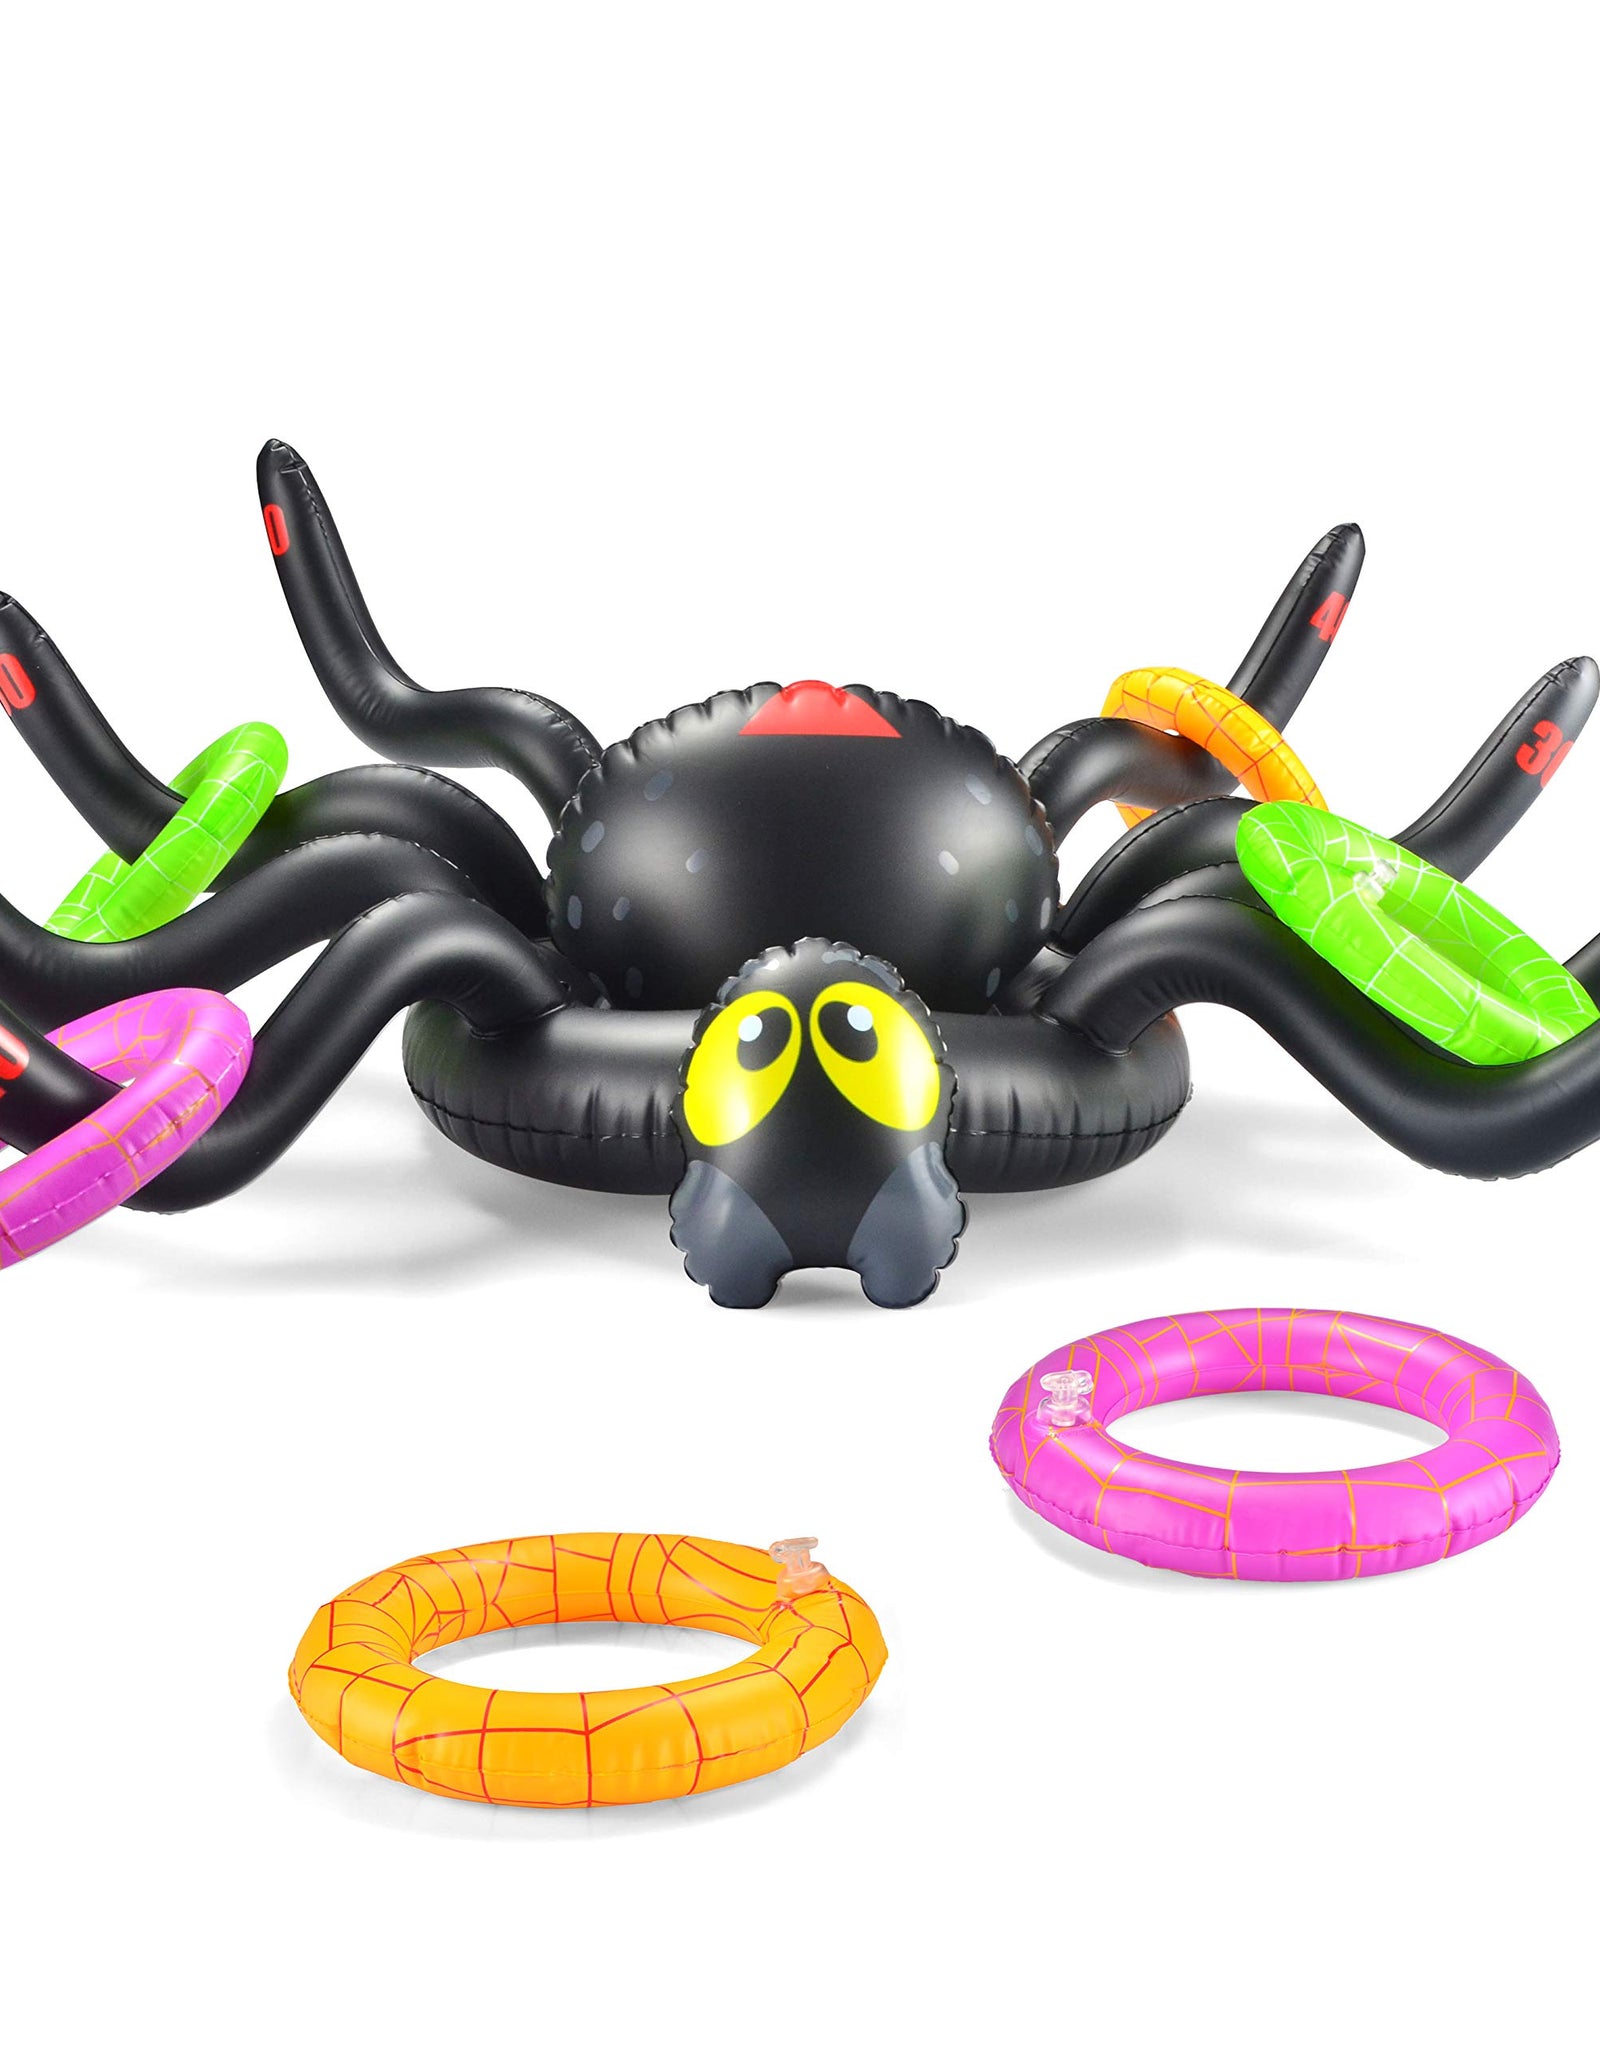 JOYIN Halloween Spider Toss Game,Huge Inflatable 37 Inch Spider Ring Toss Game, Perfect for Halloween Party Favor